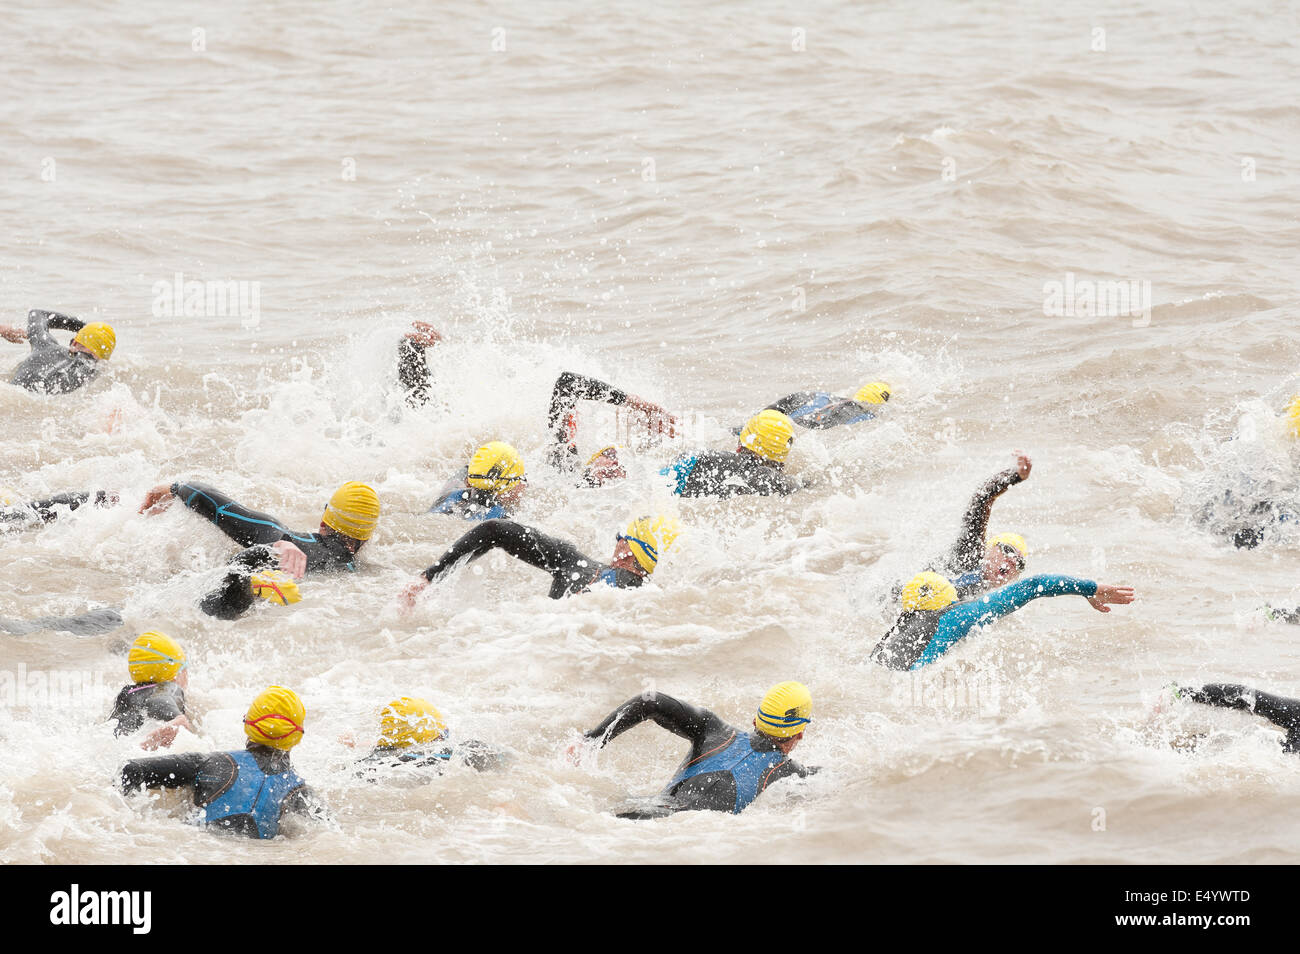 Les concurrents de natation en eau libre le sprint en début d'un triathlon dans le port de mer profonde crawl wetsuits freestyle de début Banque D'Images